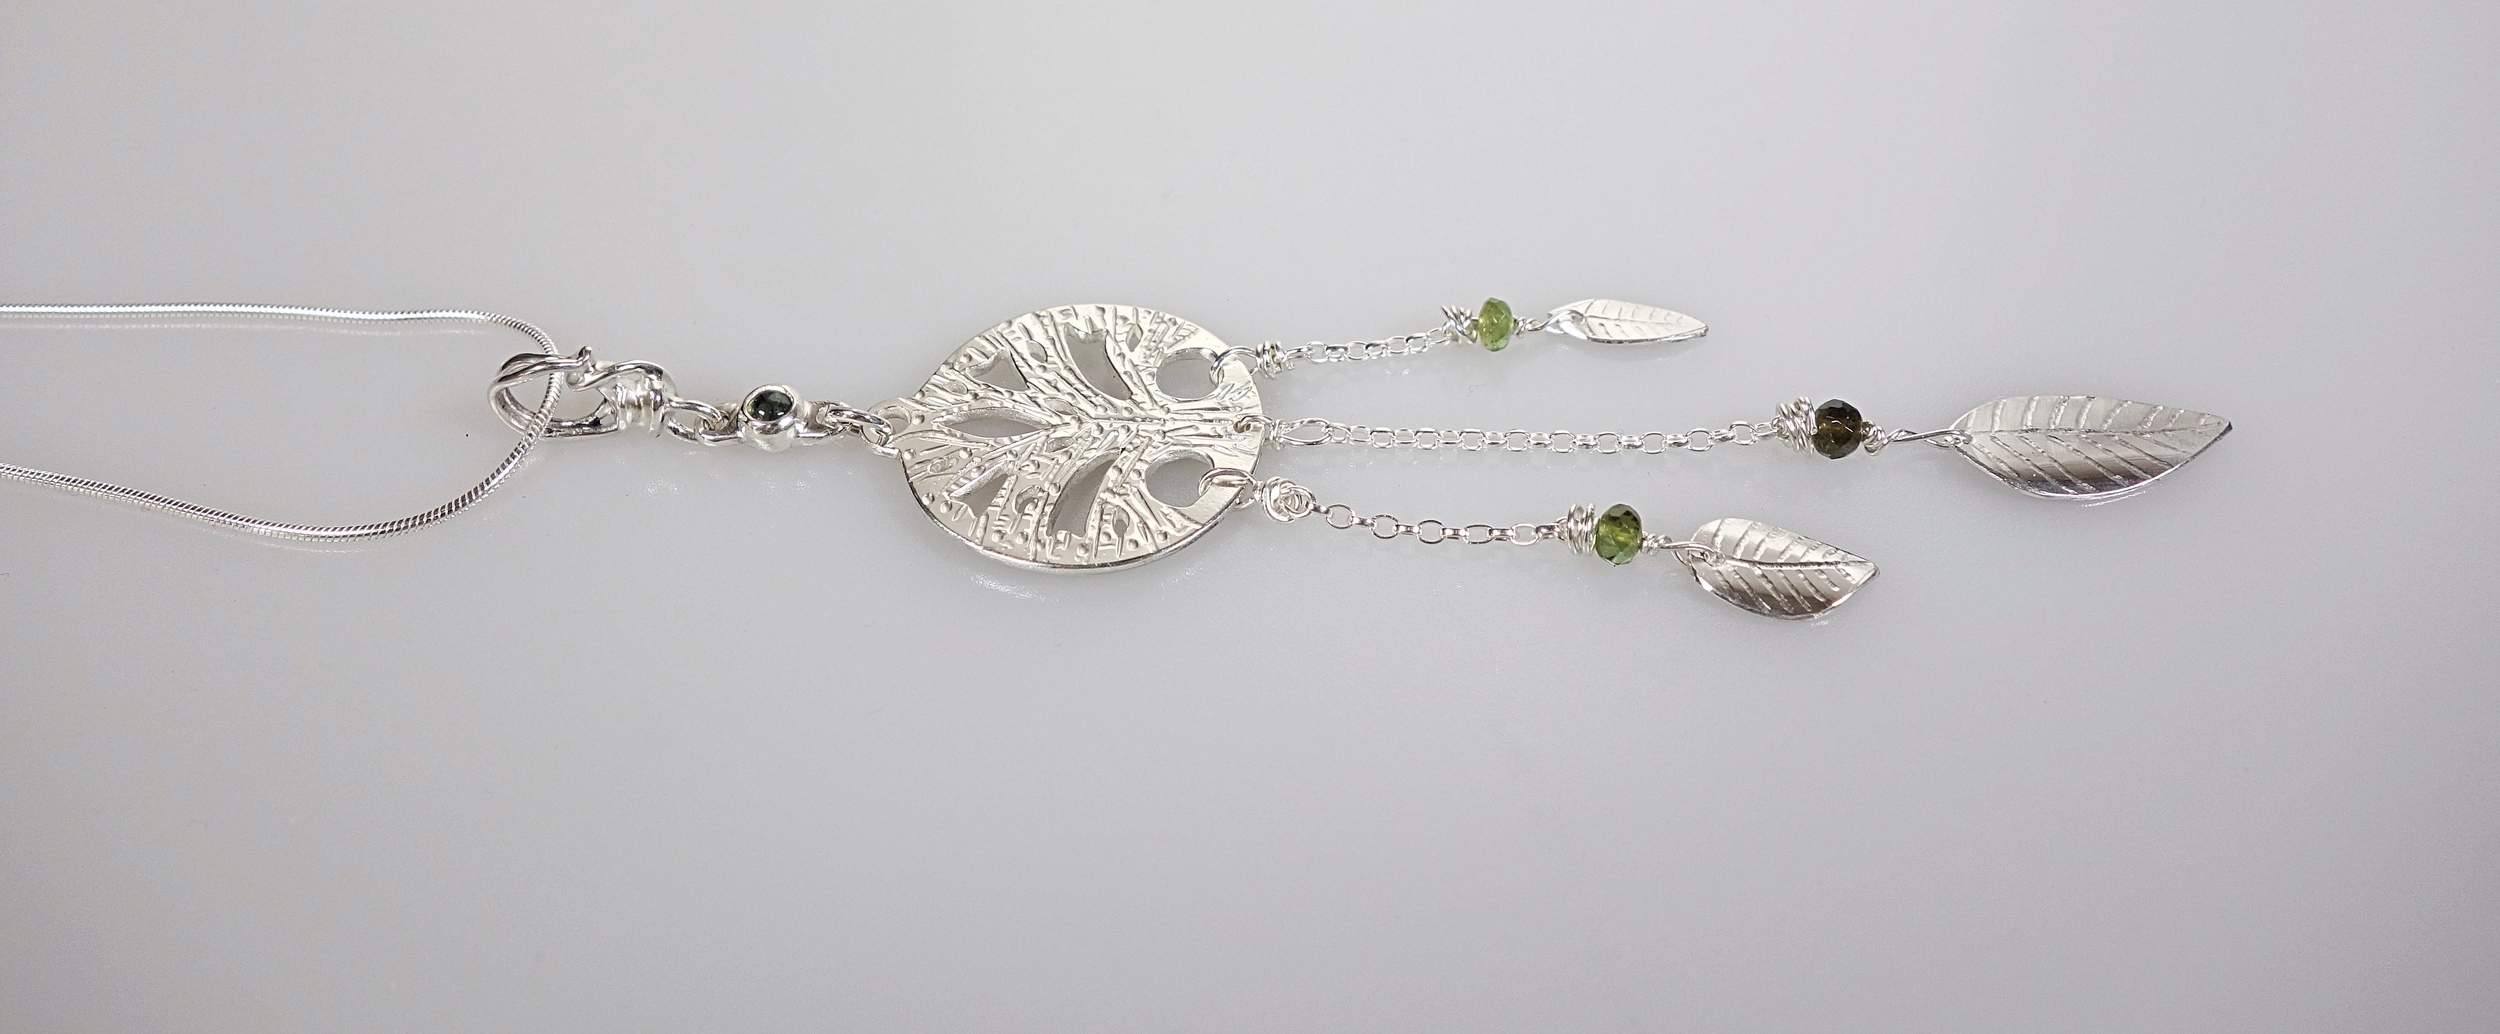 Pendentif &quot;arbre de vie&quot; avec pendants en argent massif et tourmaline verte. Talisman. Vue de profil sur fond blanc à la lumière électrique